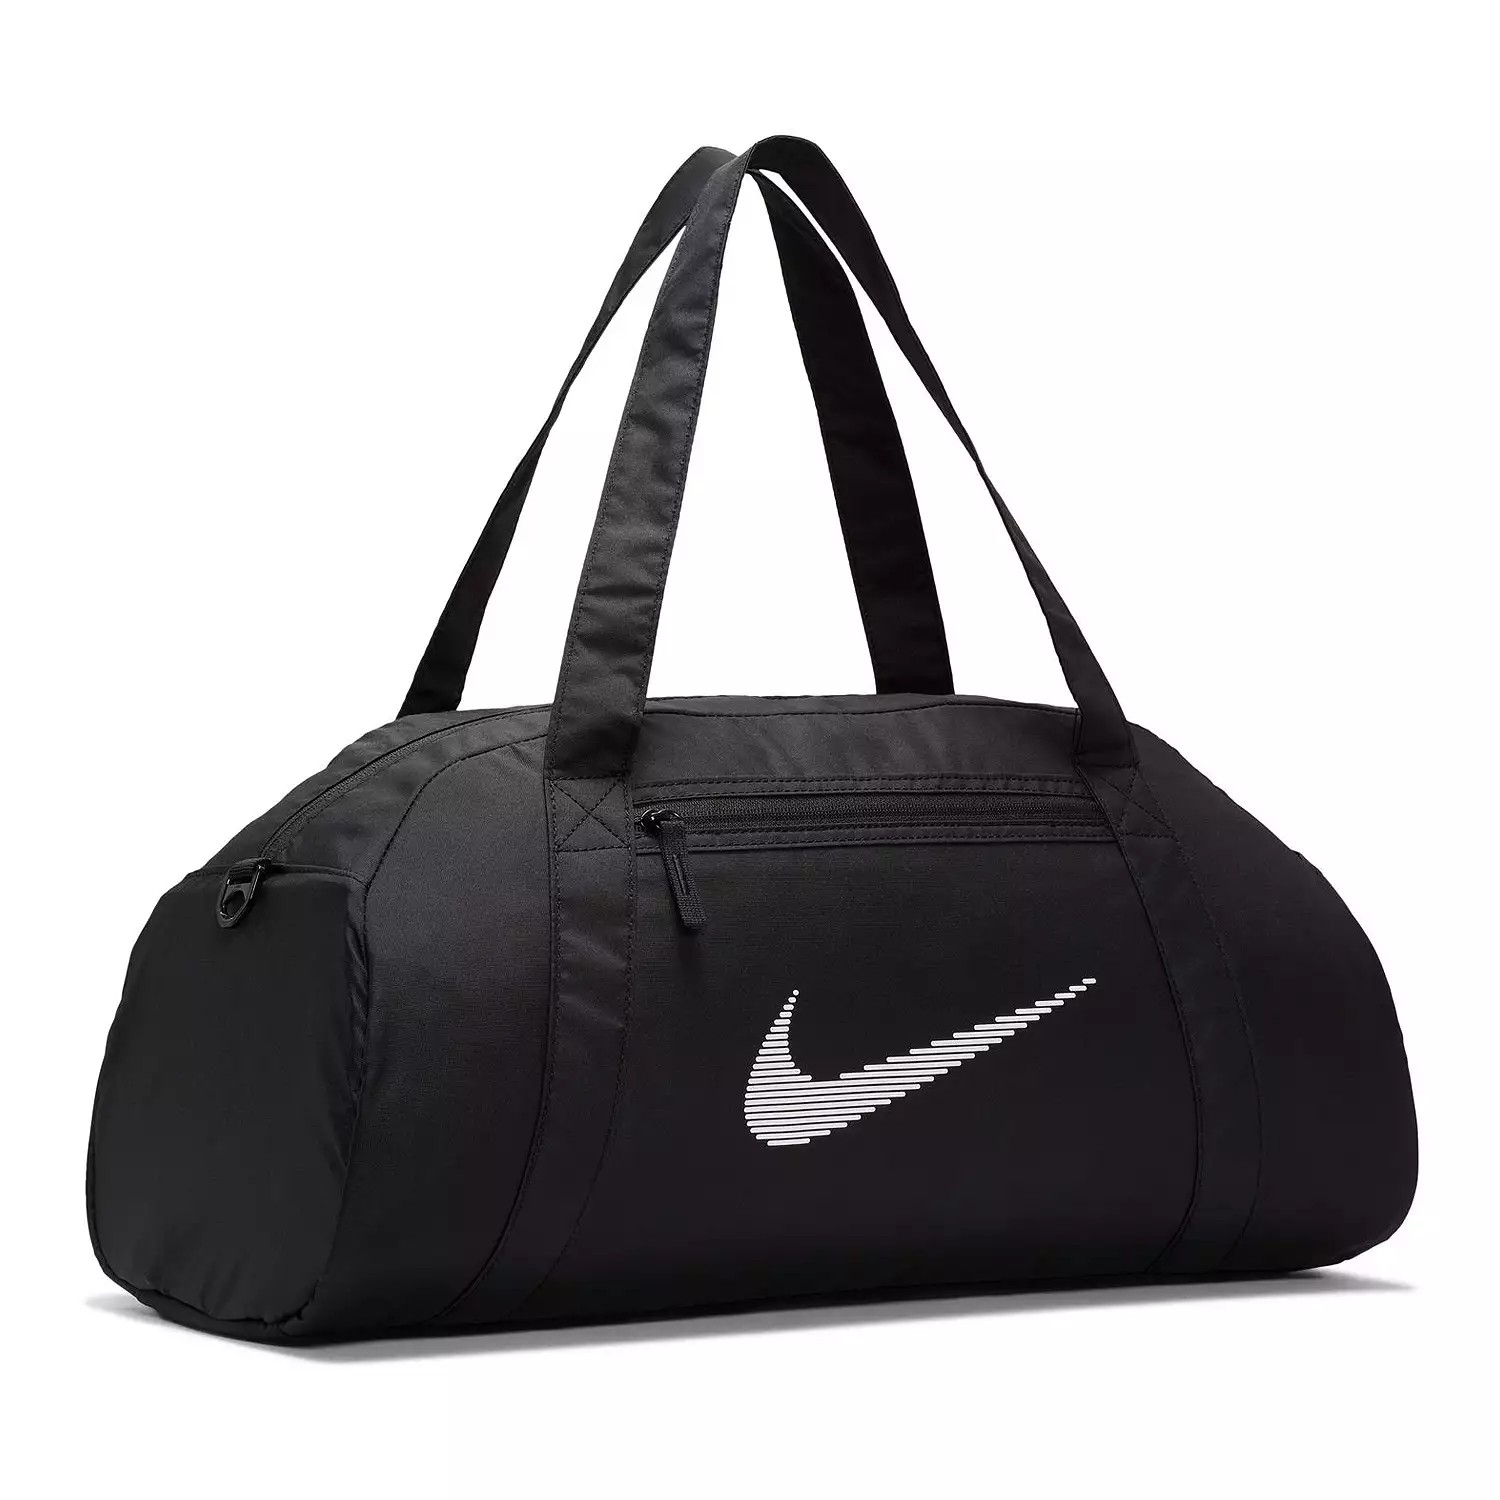 Спортивная сумка Nike Gym Club (24 л) Nike, черный спортивная сумка nike performance gym club retro unisex черный зеленый бежевый